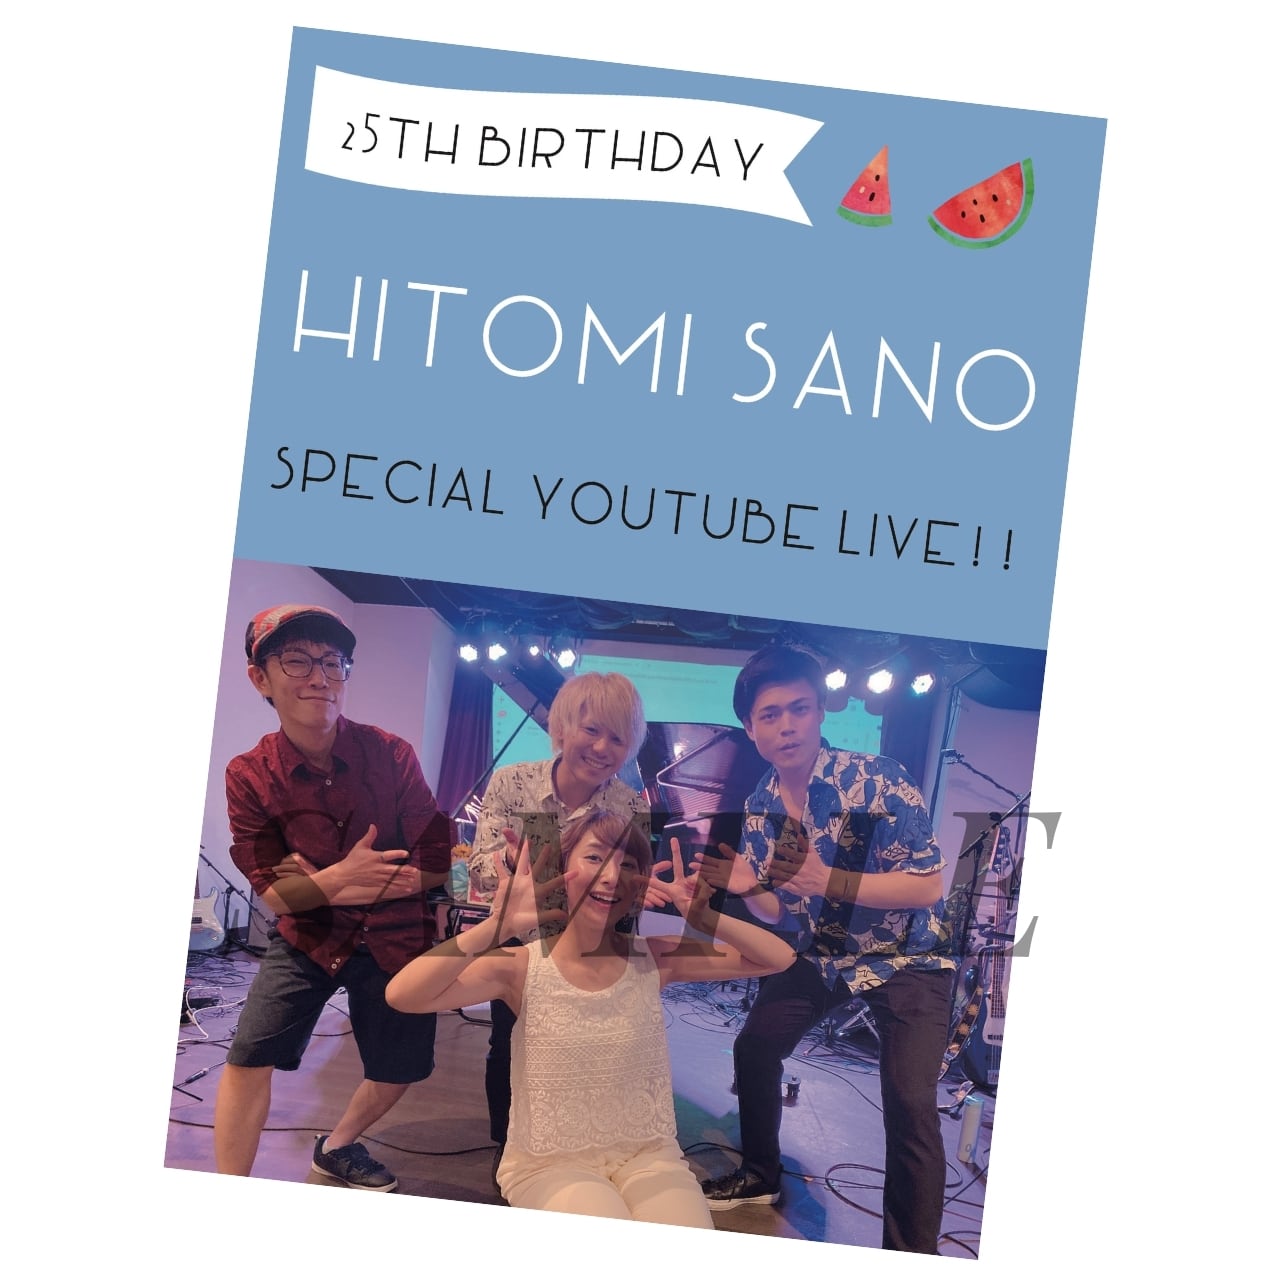 佐野仁美 25th Birthday Special Youtube Live ライブ音源cd 特典映像dvd付 Sanohitomi